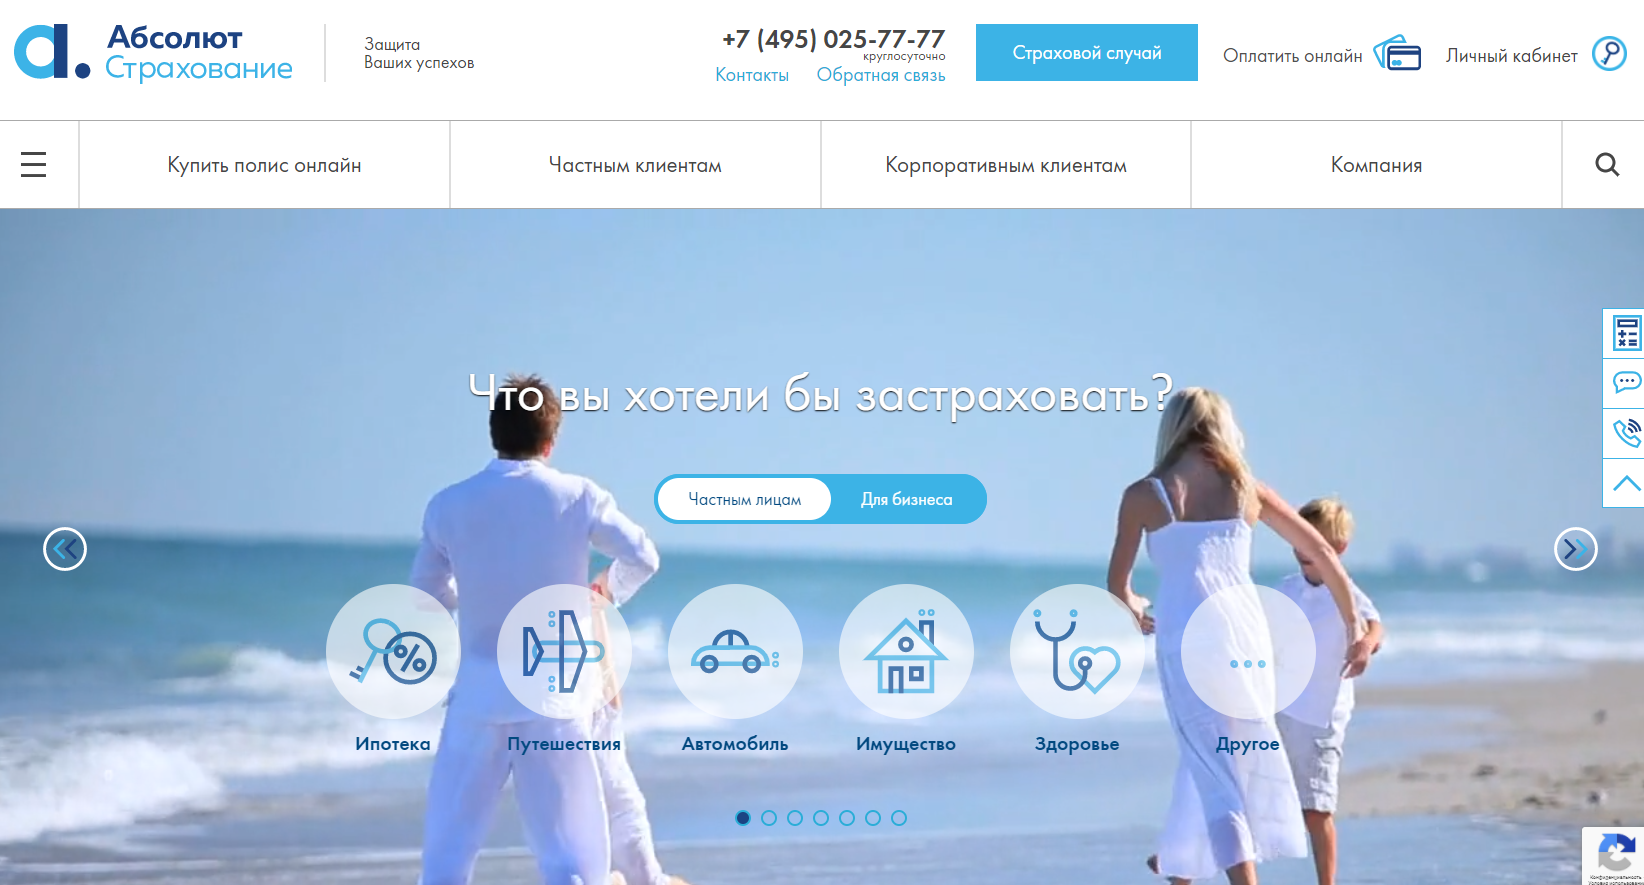 Страхования сайт новосибирск. Абсолют страхование Новосибирск. Абсолют страхование логотип. Сайты страховых компаний.